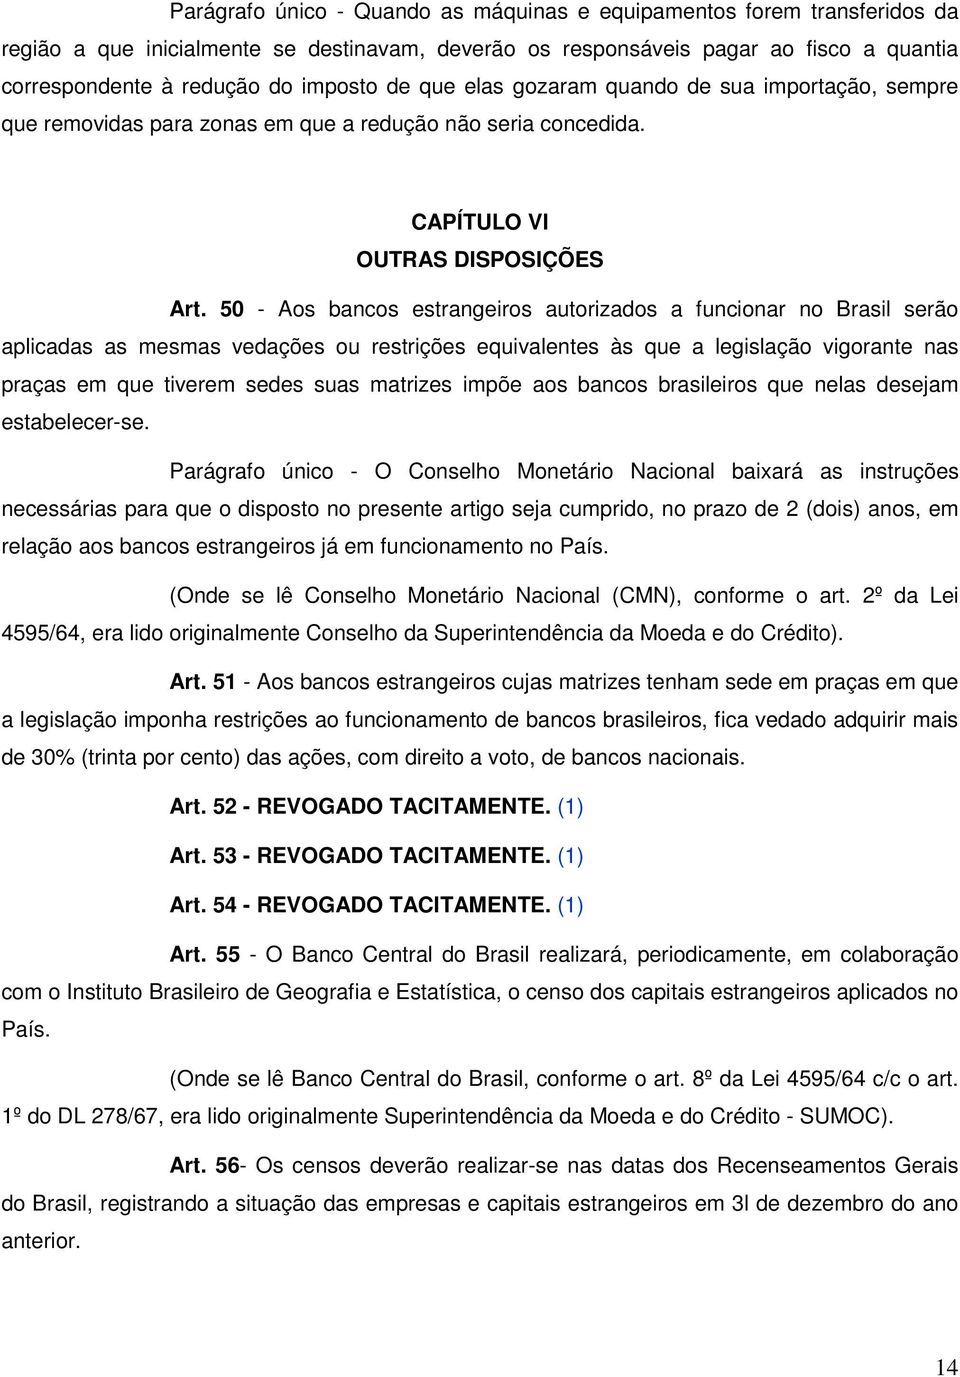 50 - Aos bancos estrangeiros autorizados a funcionar no Brasil serão aplicadas as mesmas vedações ou restrições equivalentes às que a legislação vigorante nas praças em que tiverem sedes suas